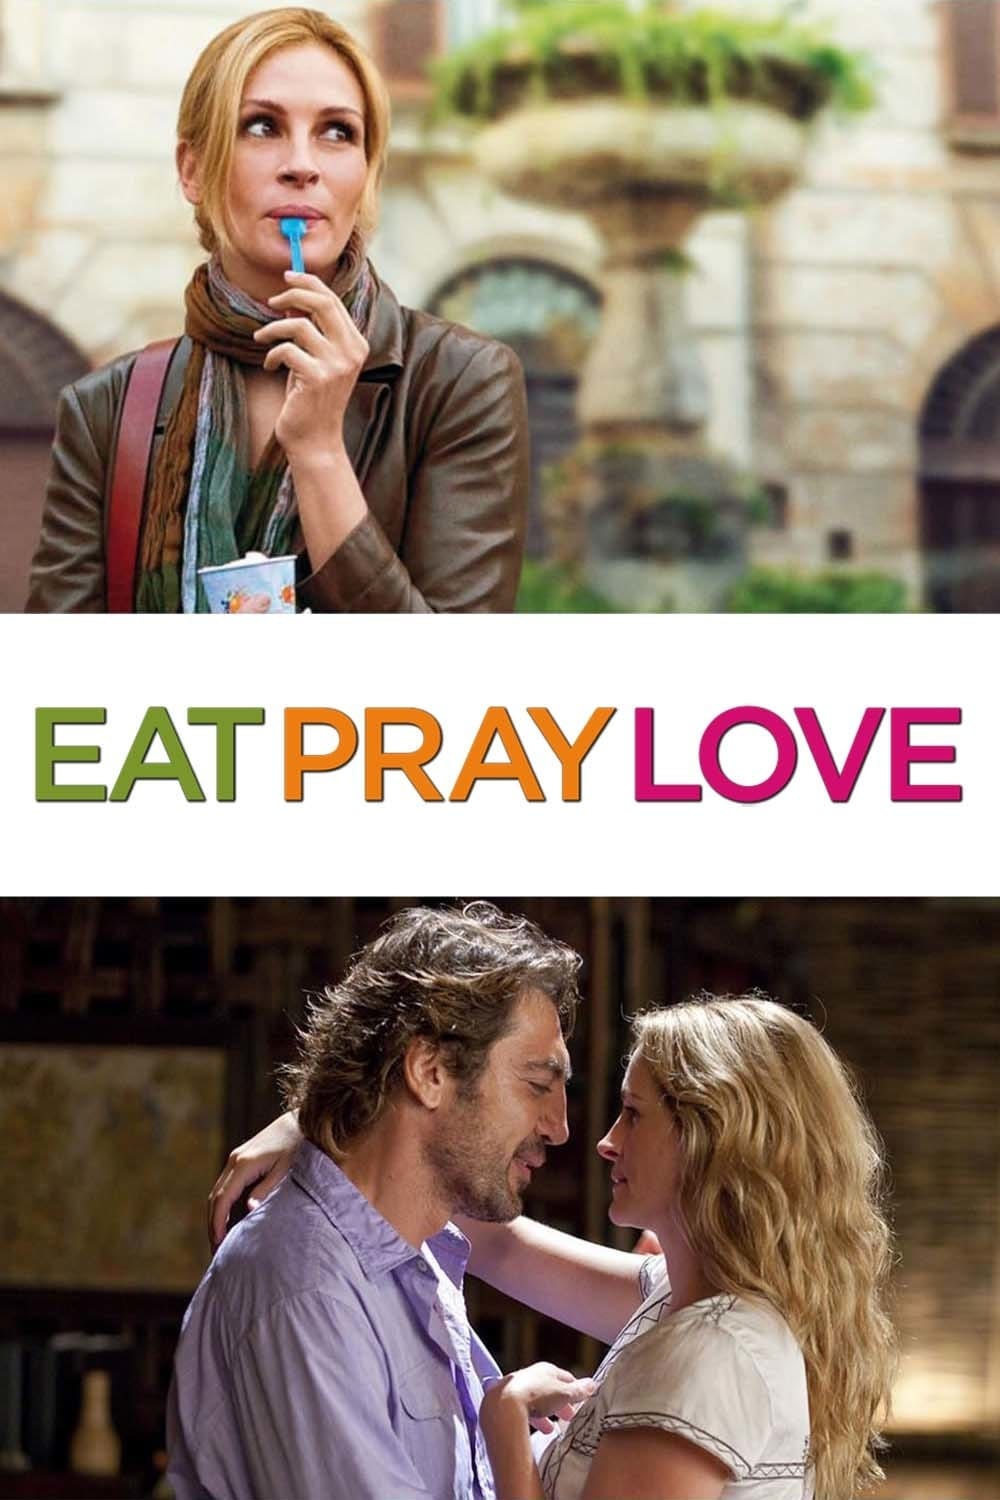 לאכול, להתפלל, לאהוב